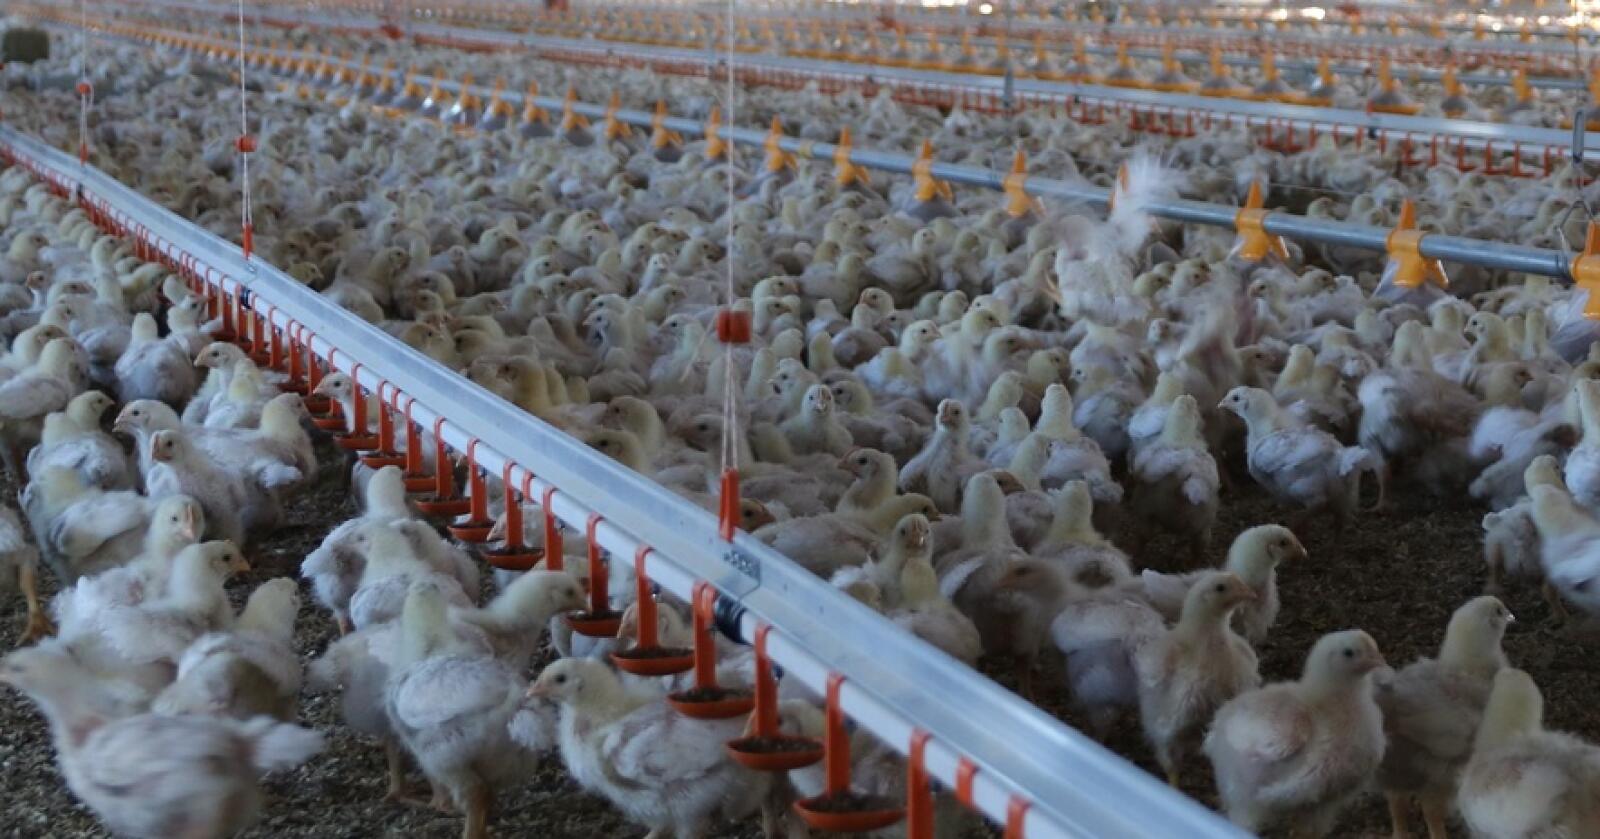 SAKTEVOKSENDE: Fra 2023 skal Prior levere saktevoksende kylling til Norgesgruppen. Foto: Øystein Heggdal